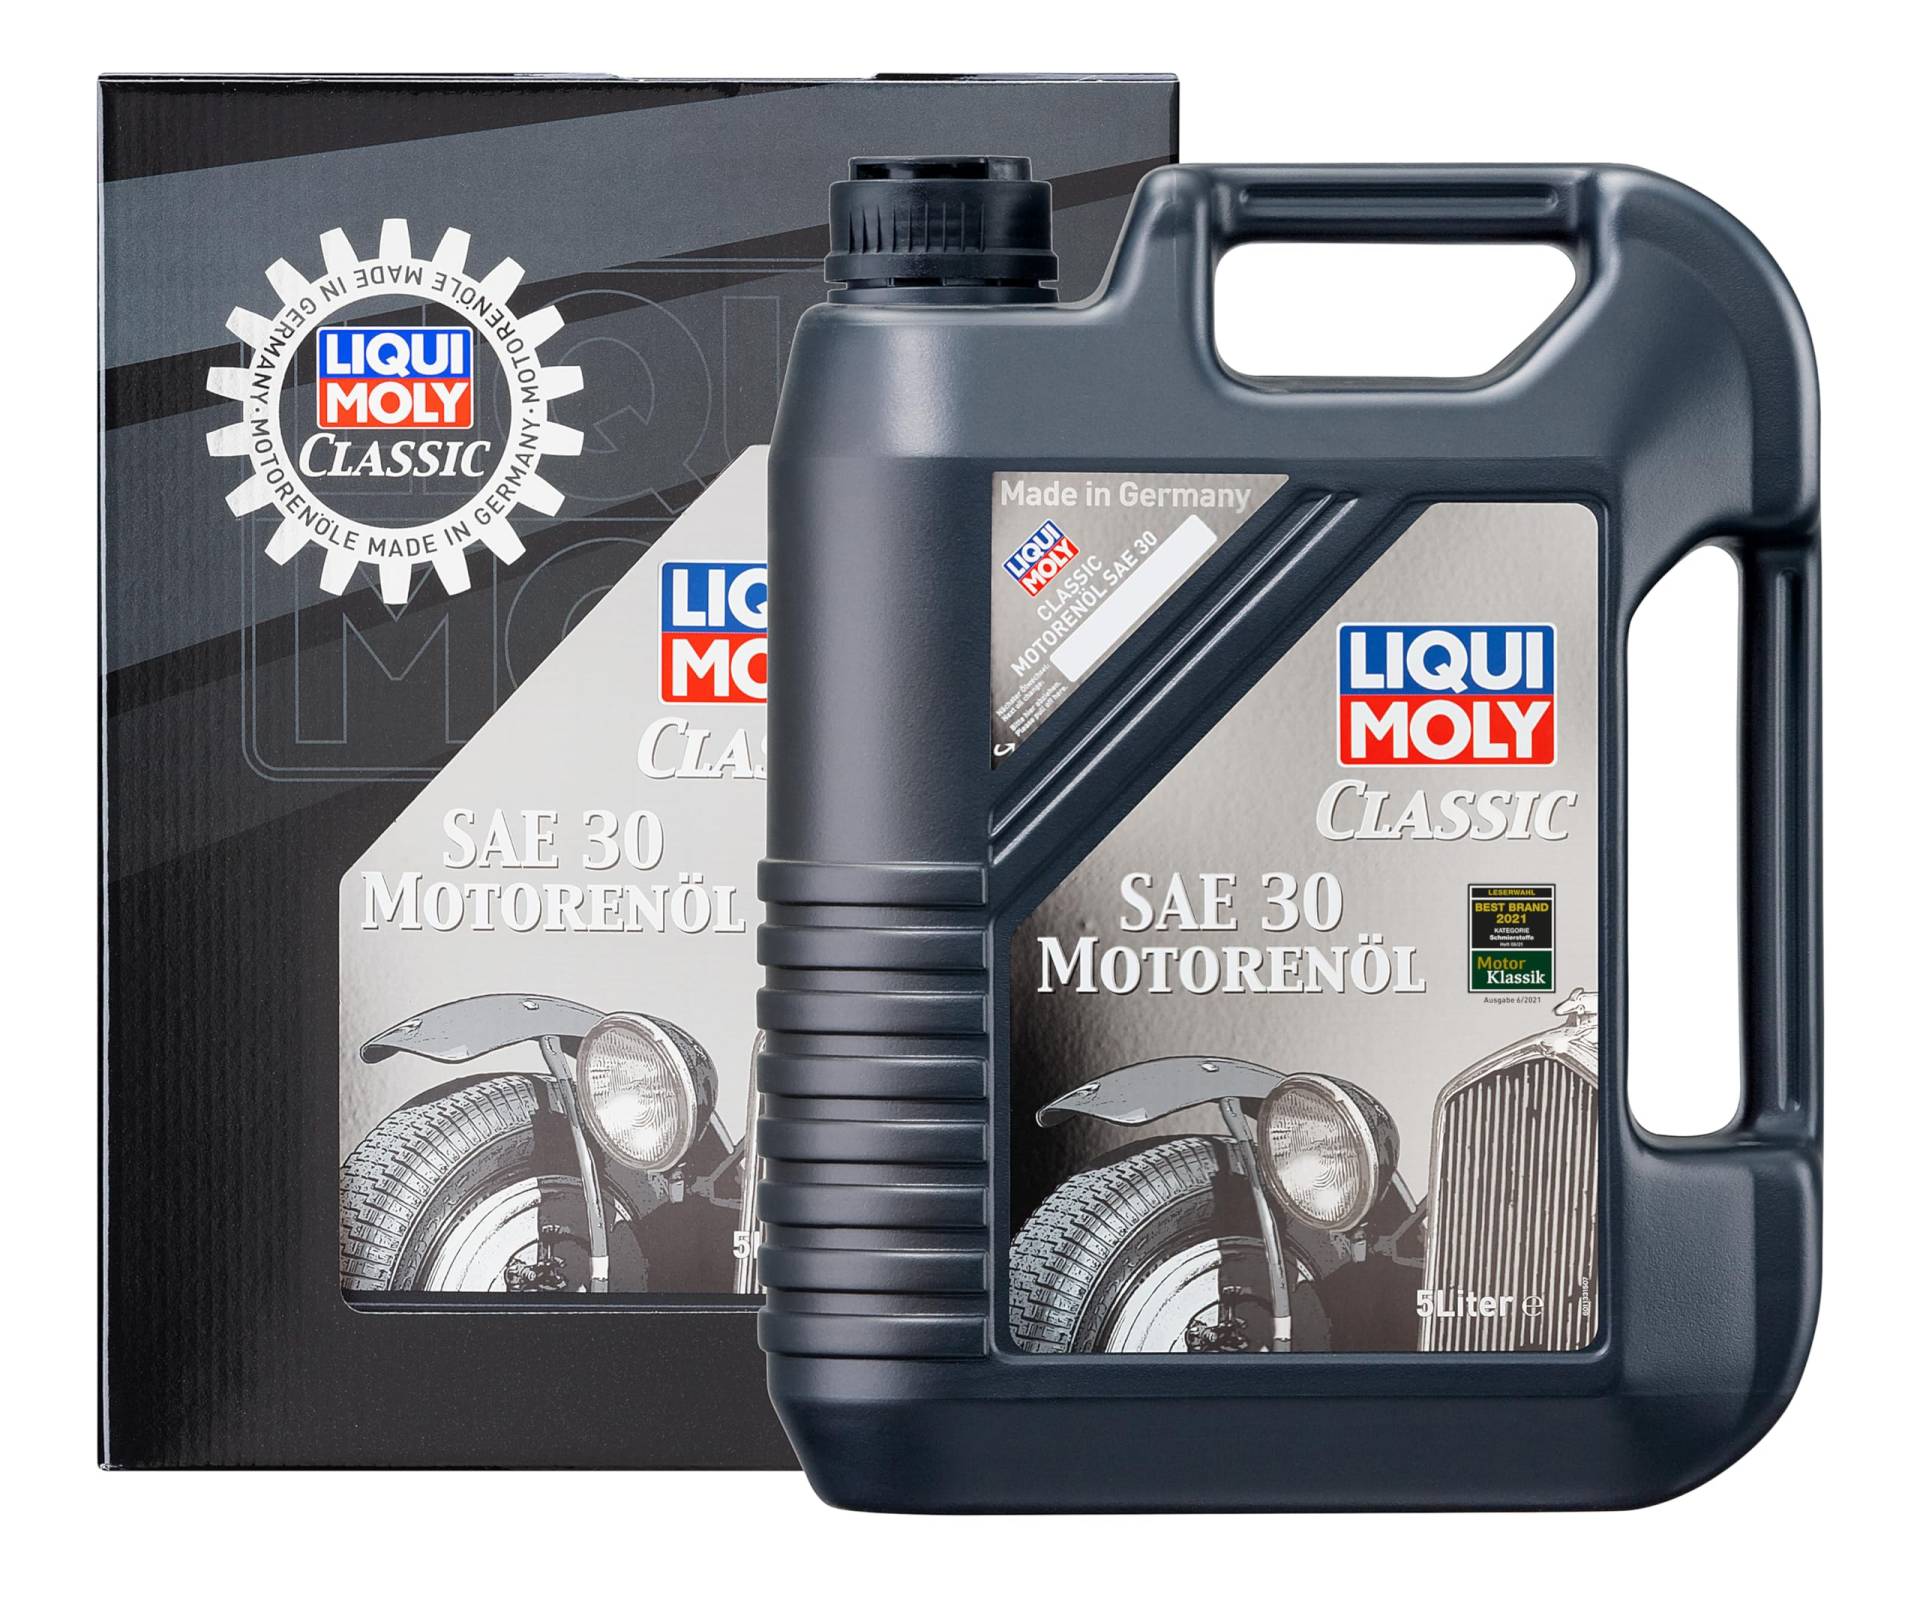 LIQUI MOLY Classic Motorenöl SAE 30 | 5 L | mineralisches Motoröl | Art.-Nr.: 1133 von Liqui Moly